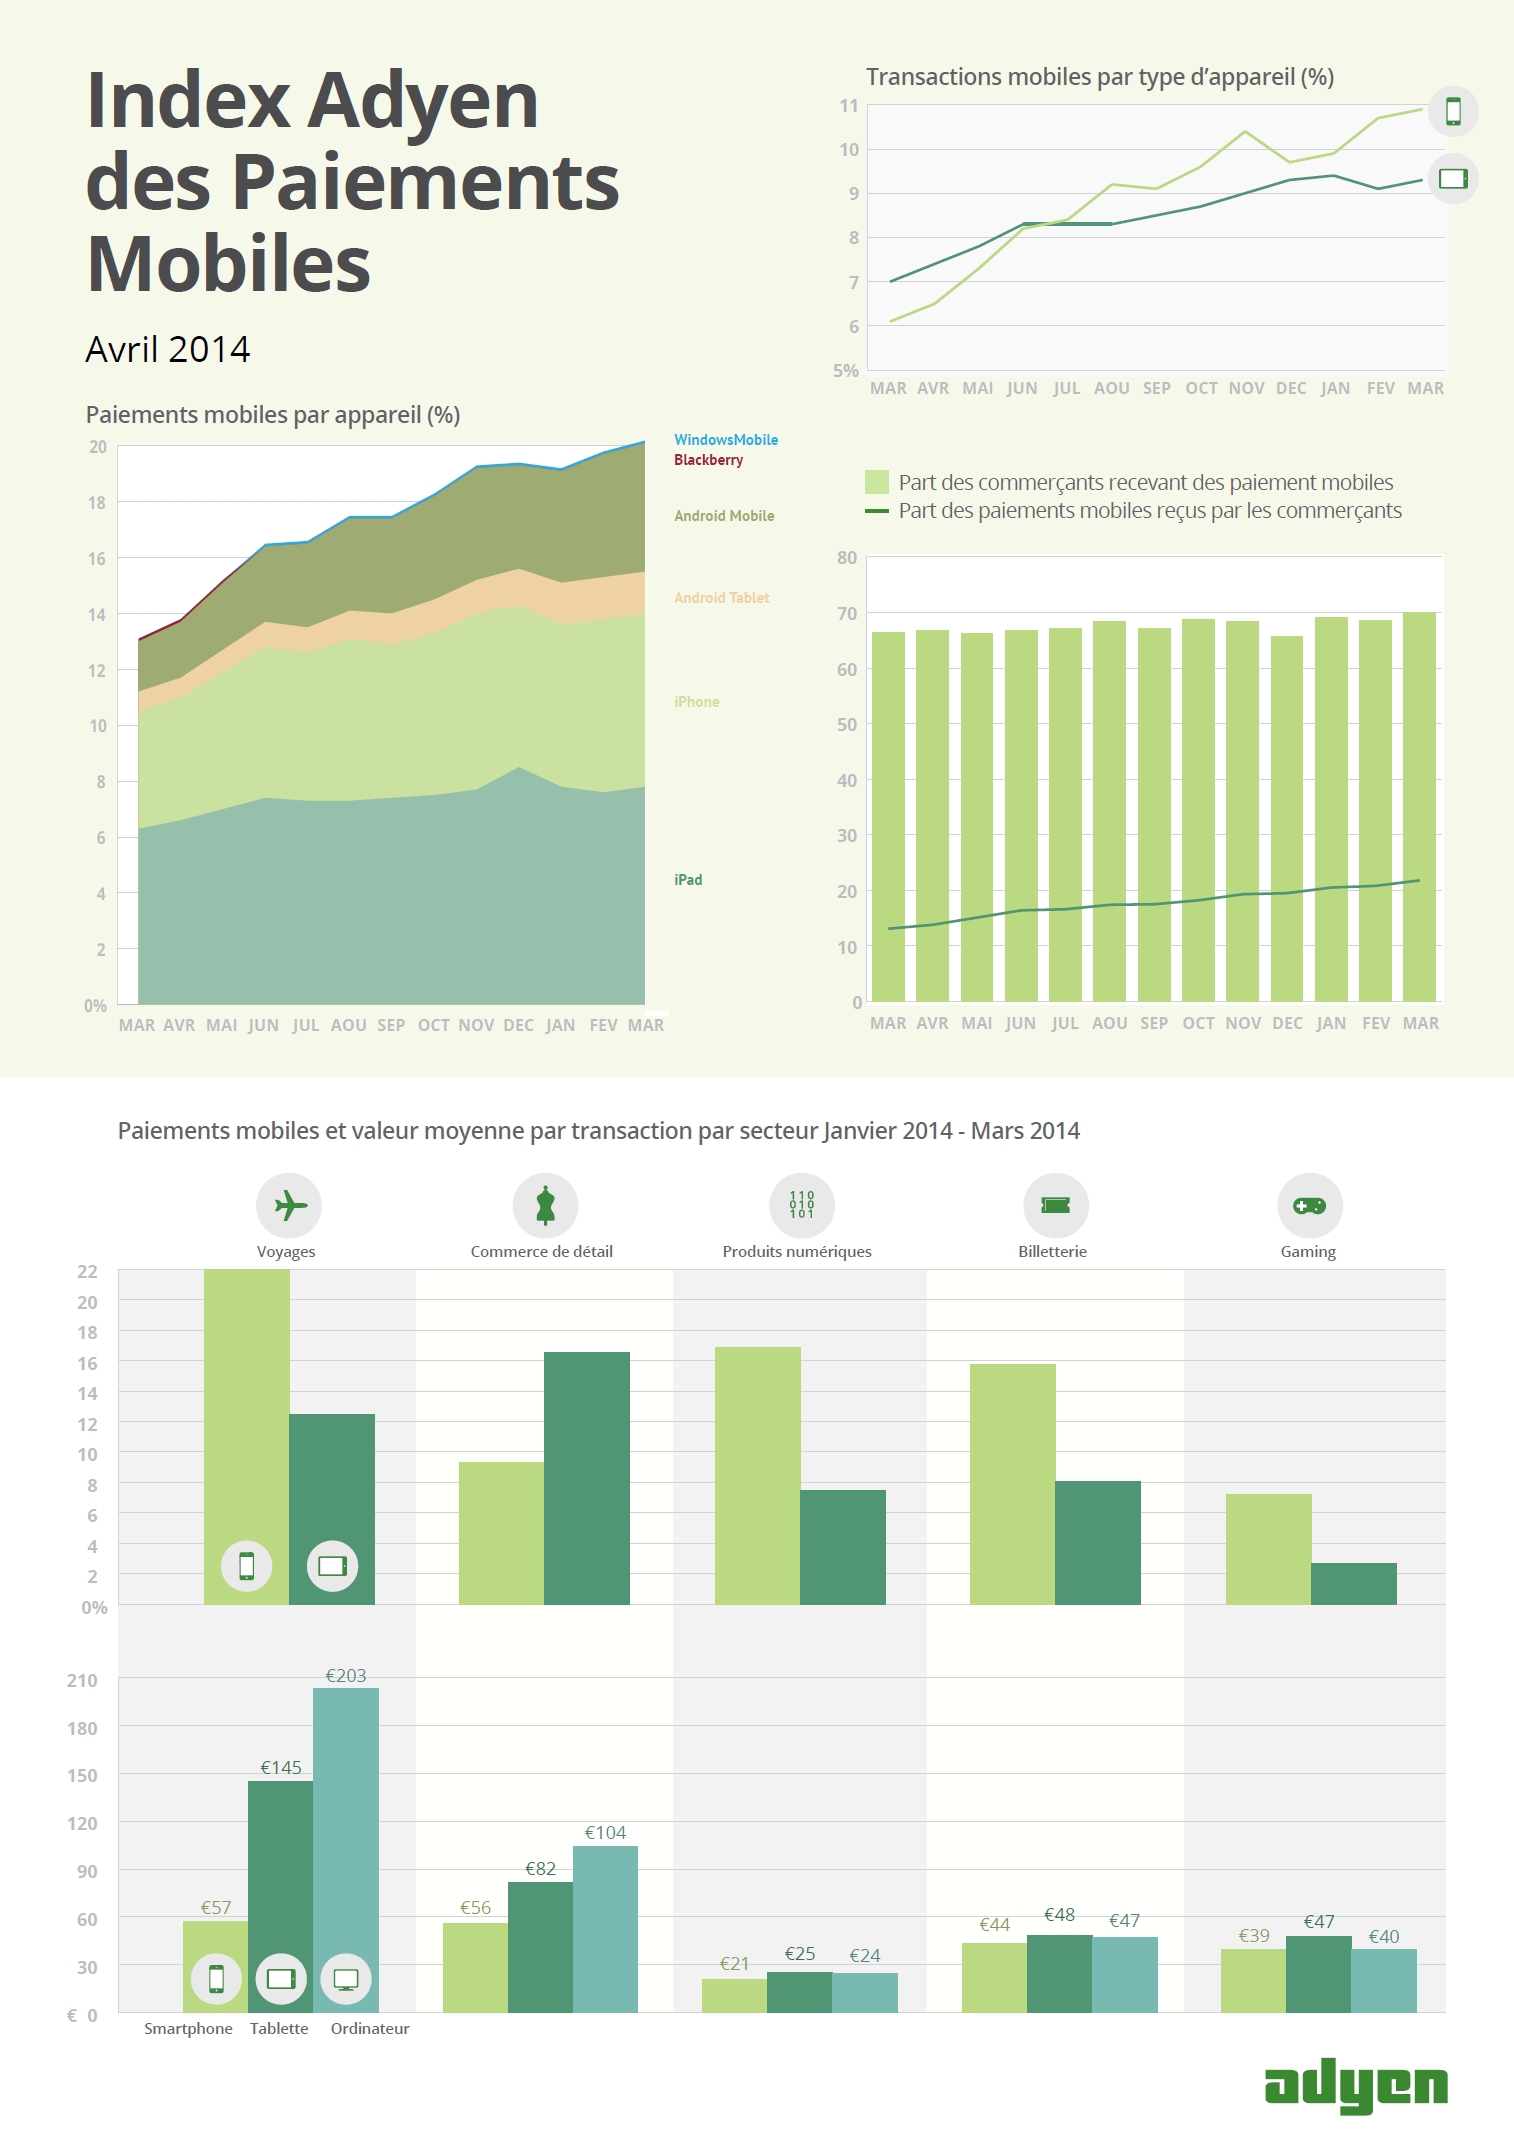 Index Adyen des Paiements Mobiles - Avril 2014